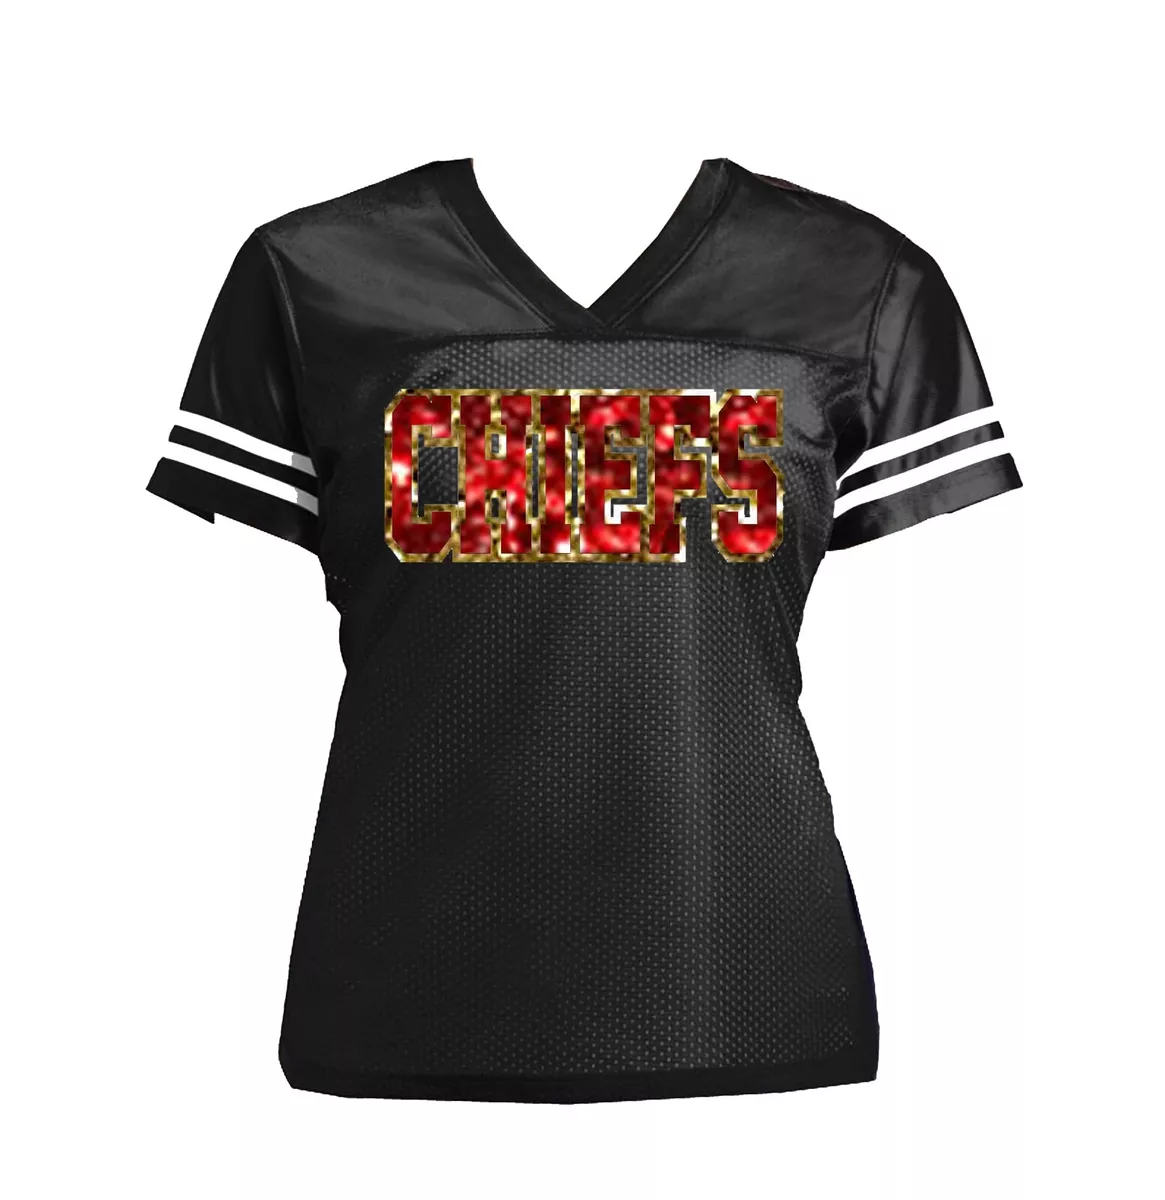 Kansas City Chiefs Glitter Women's Jersey Shirt, Black with Red